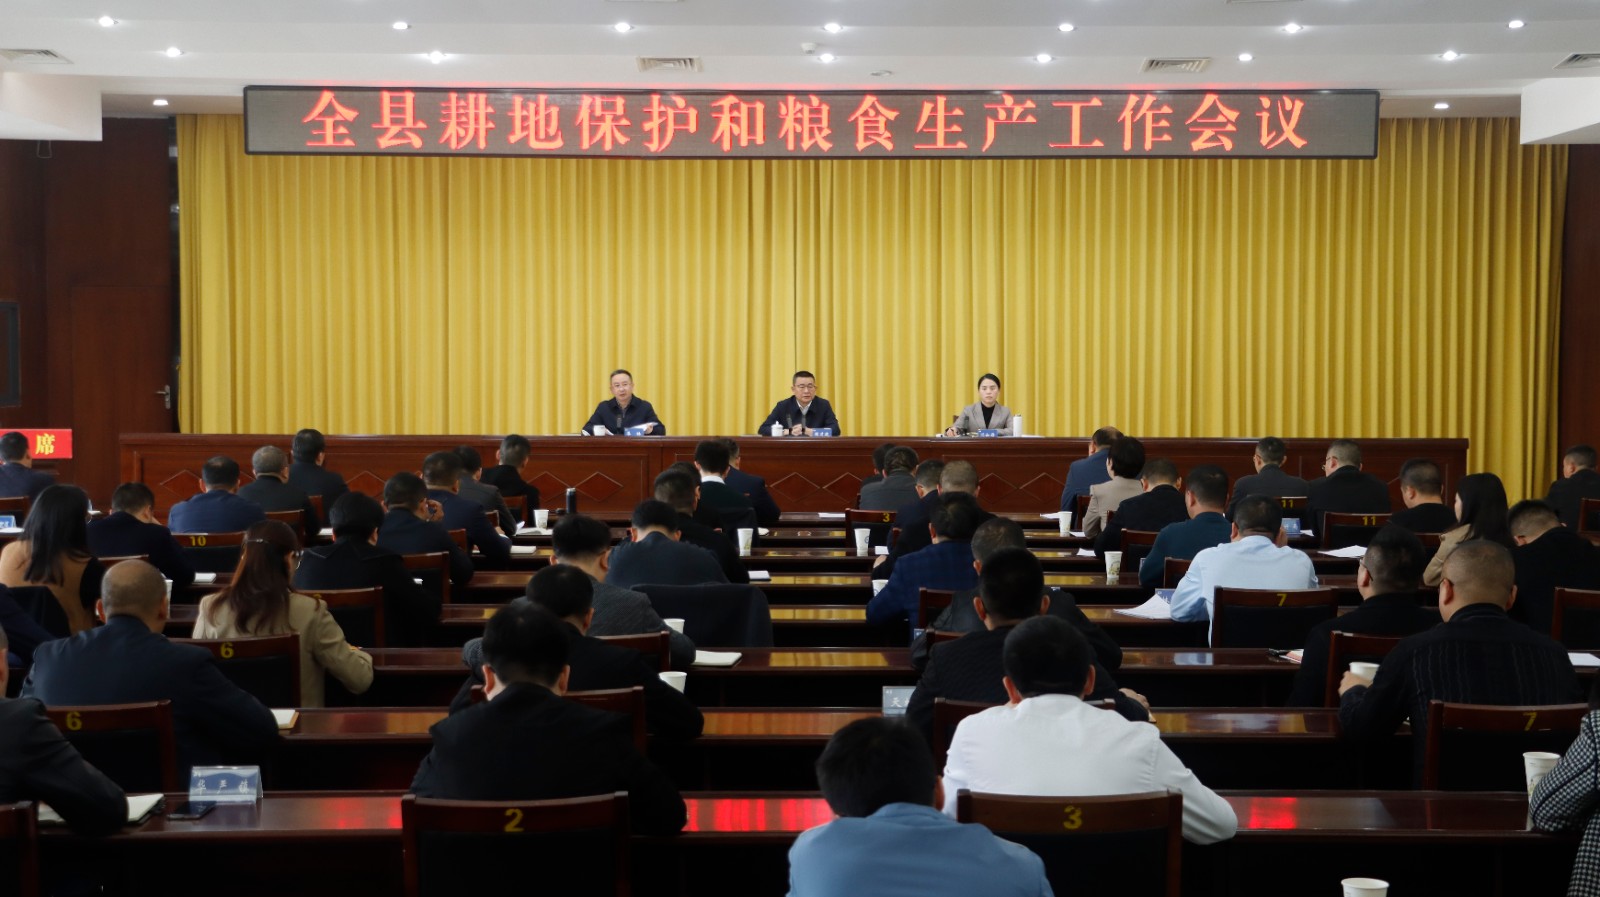 安岳县召开耕地保护和粮食生产工作会议